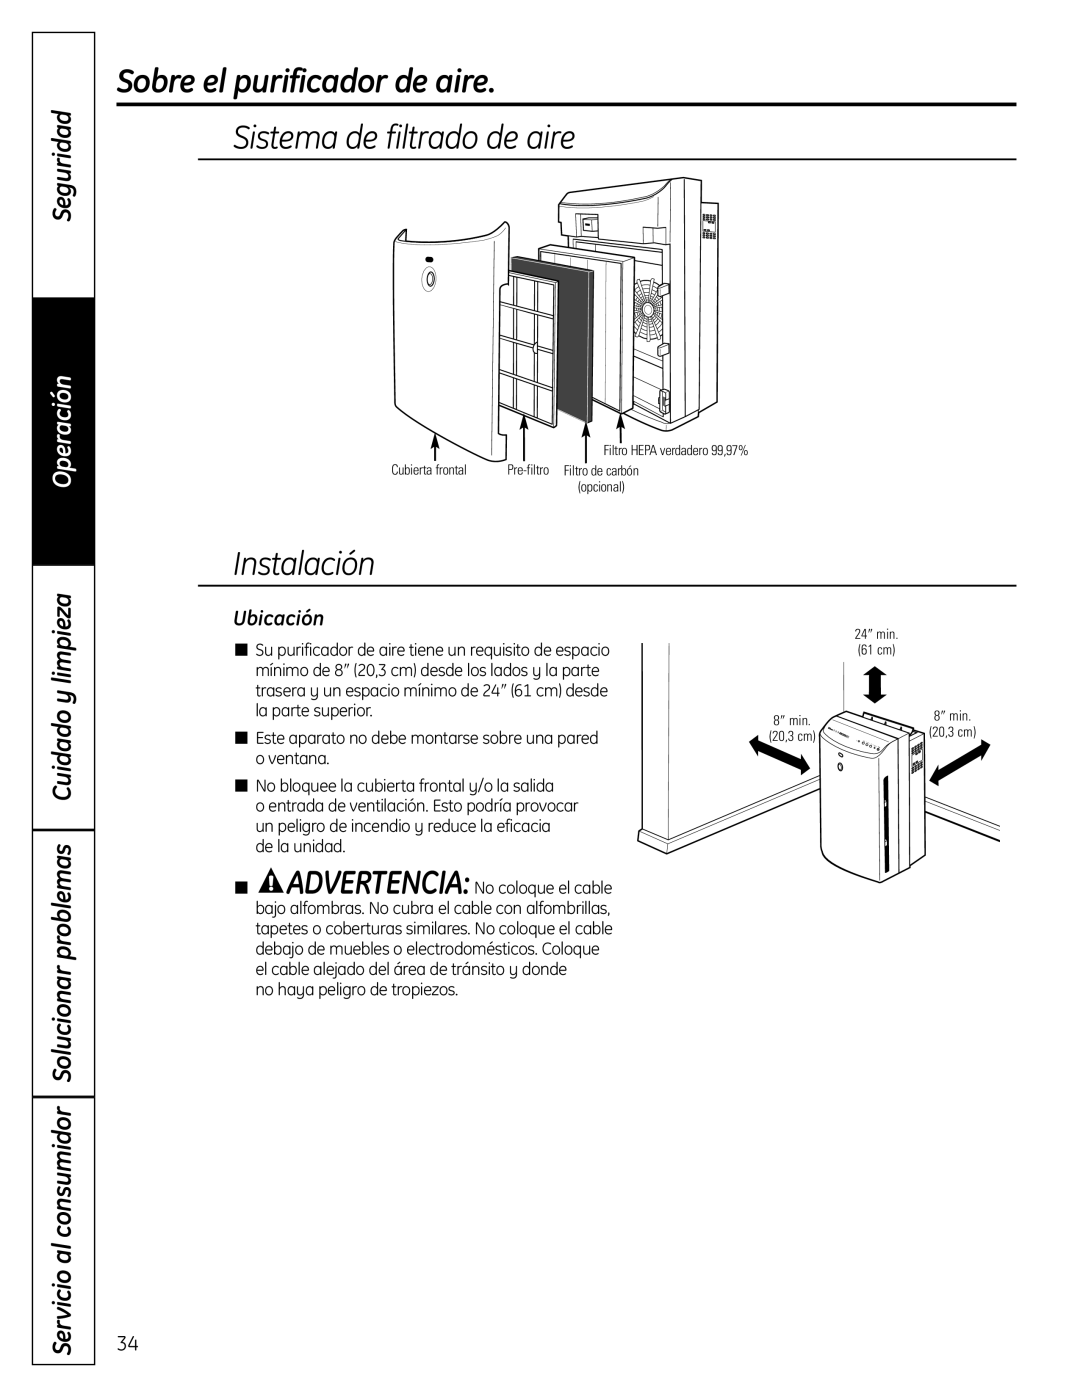 GE AFHC32AM Sistema de filtrado de aire, Instalación, Ubicación, Sobre el purificador de aire, Seguridad, Operación 